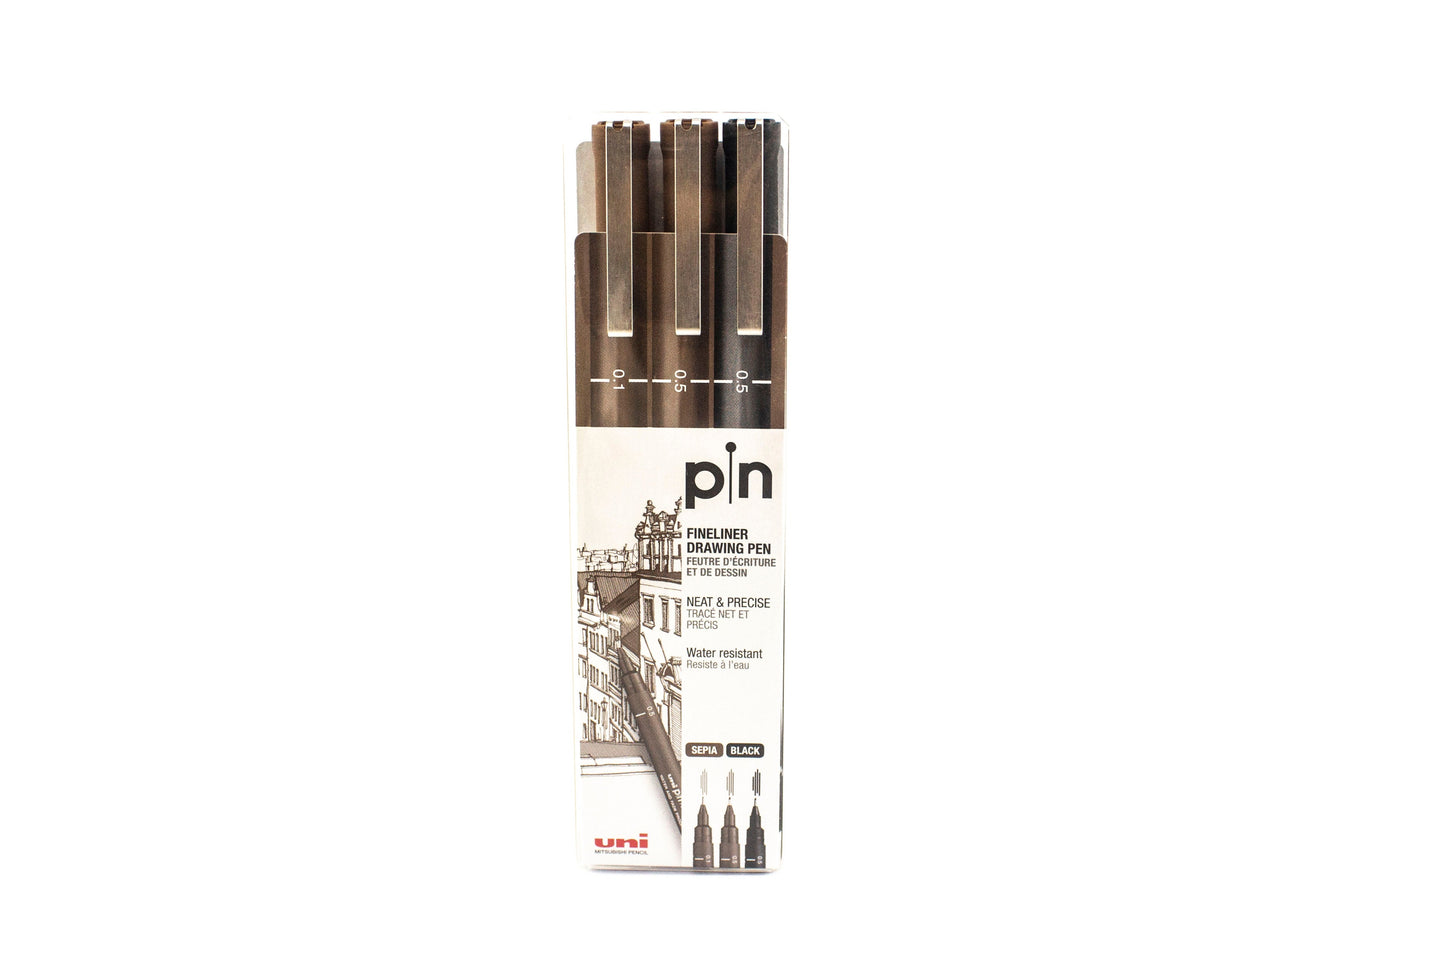 Uni Pin Fineliner Drawing Pen 3 Pin Set